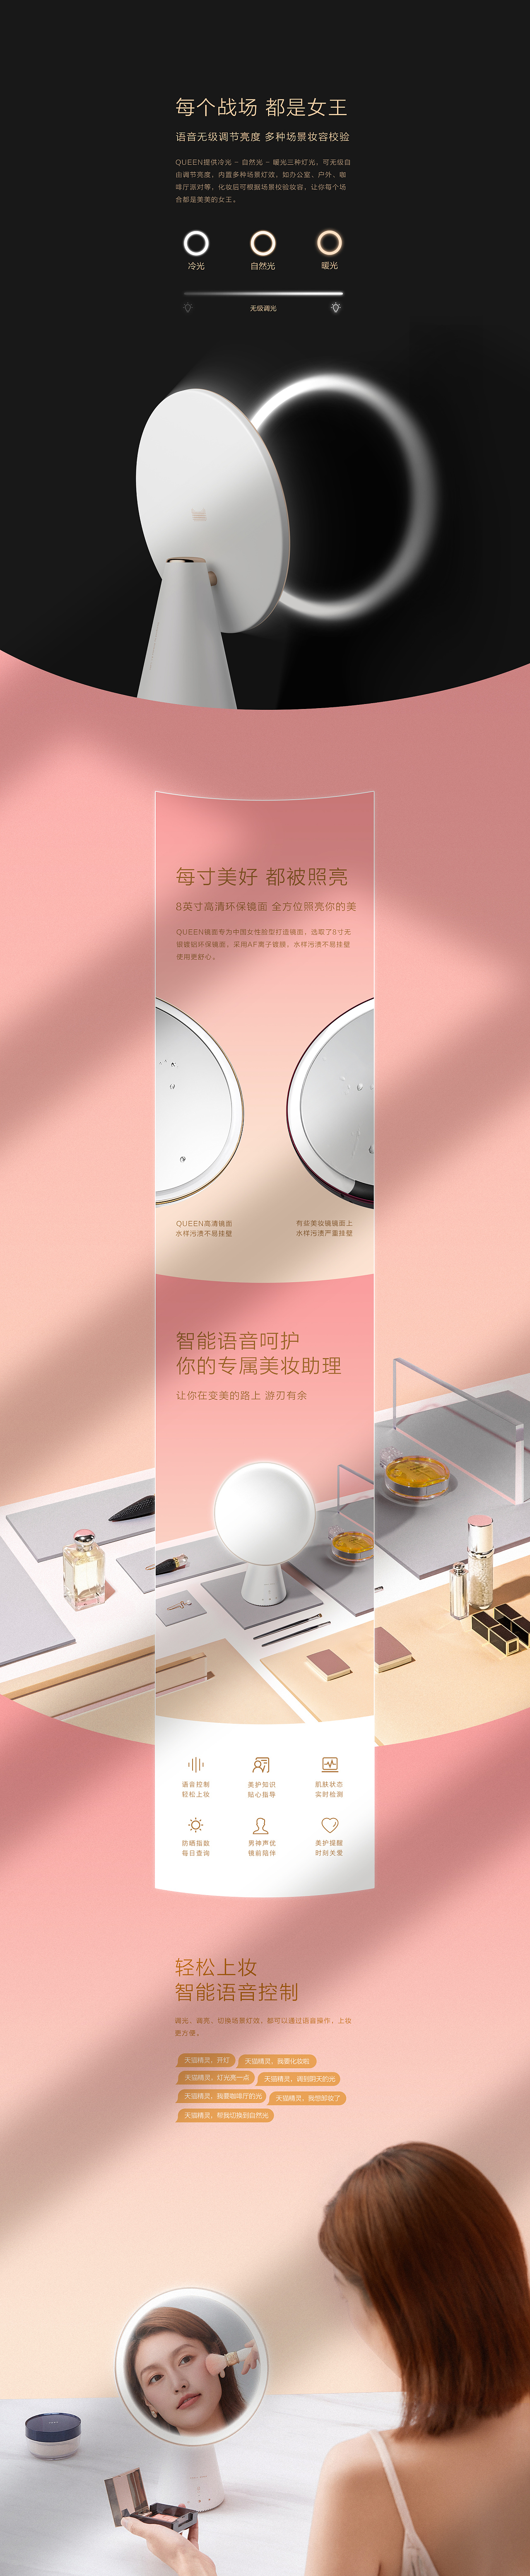 2014新品发布(17) 住在杭州网_天猫新品发布_小米新品发布 海报